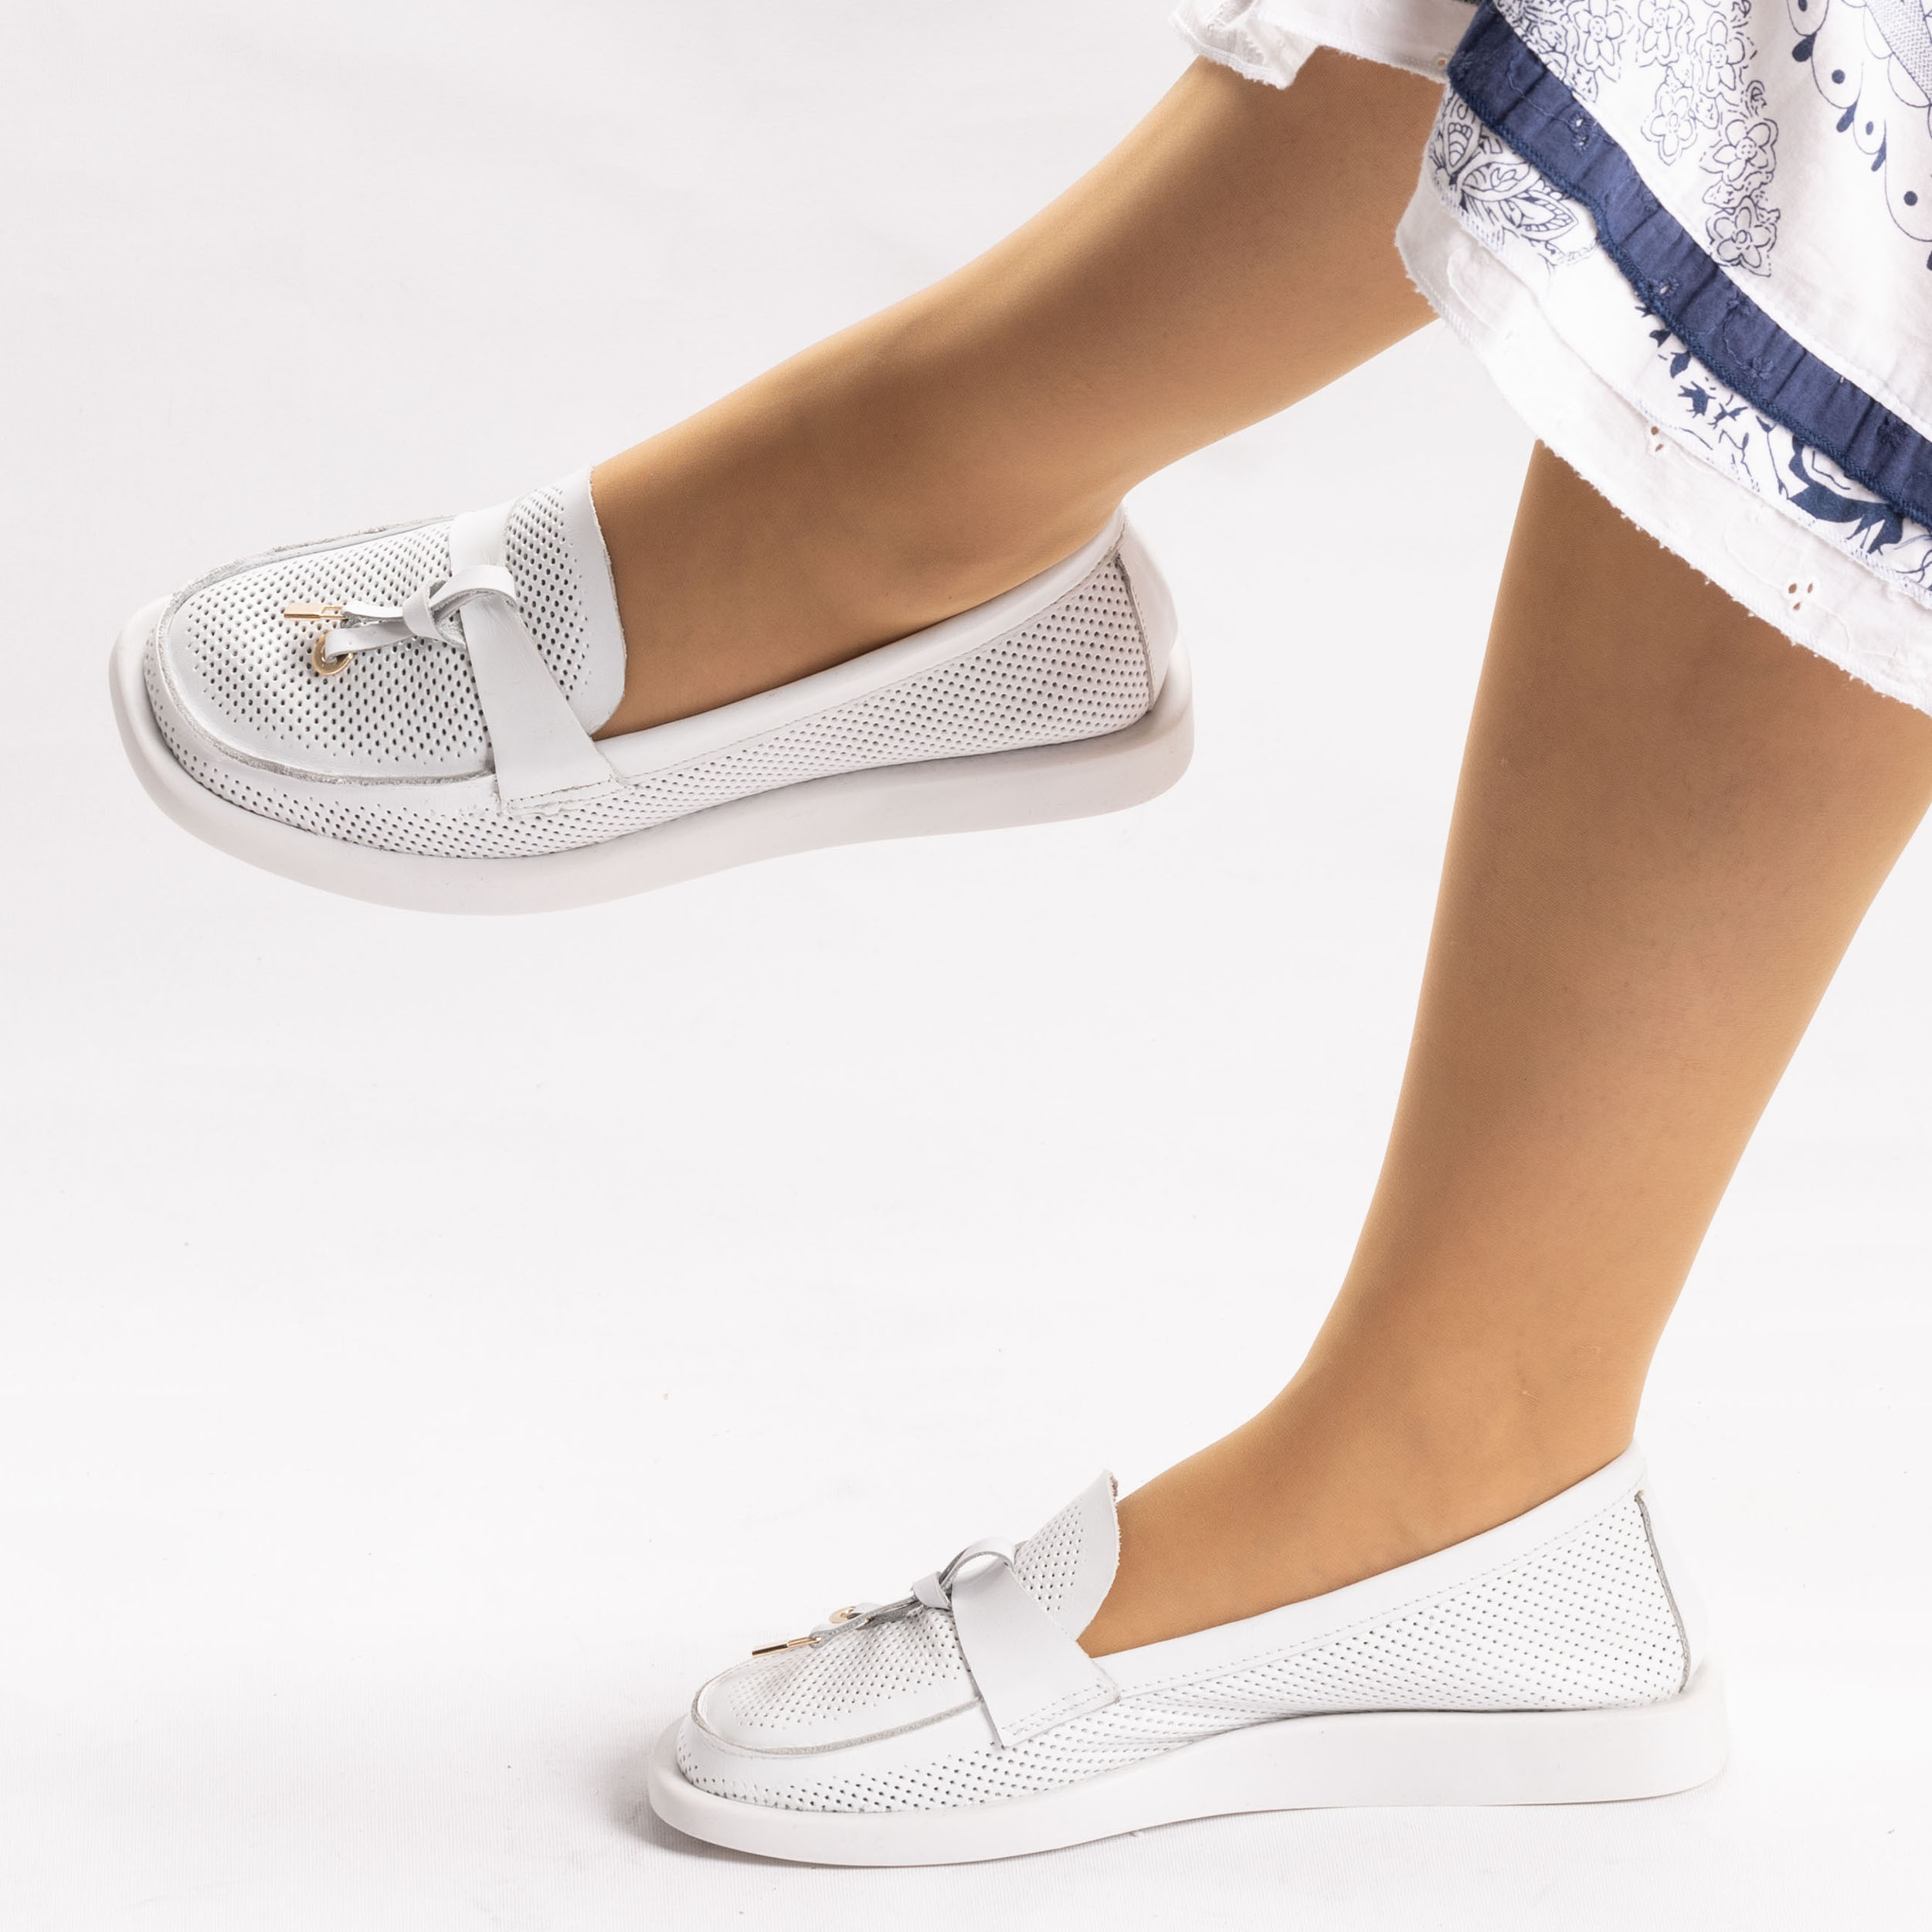 Kadın Hakiki Yumuşak Deri Beyaz Günlük Loafer Babet Ayakkabı, Renk: Beyaz, Beden: 36